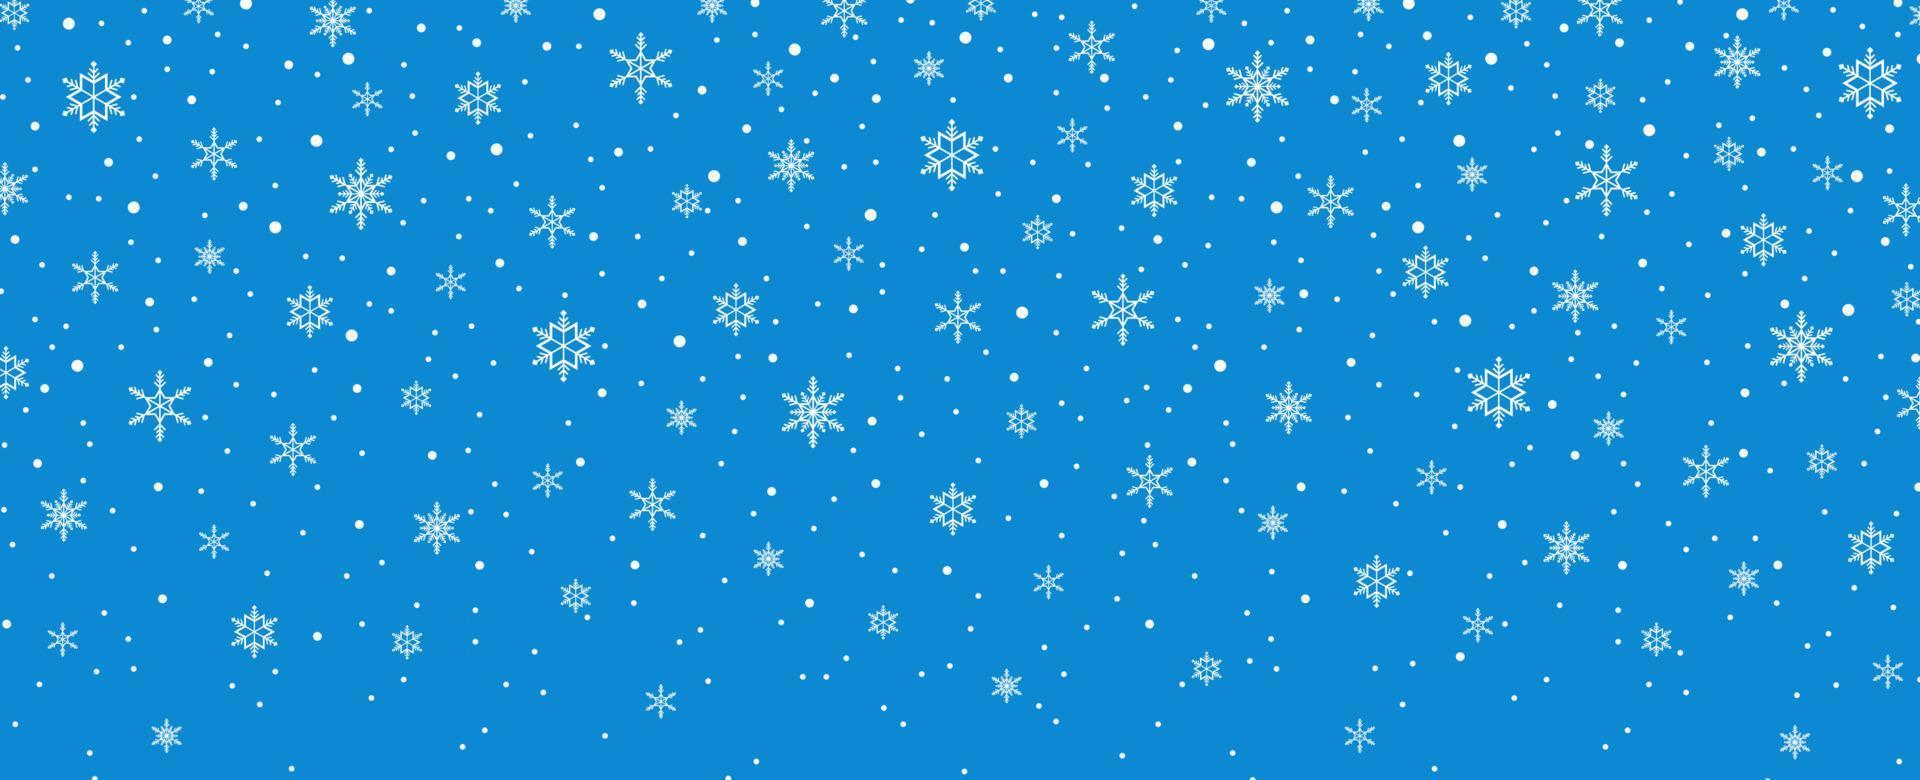 Feliz navidad, copos de nieve y fondo de nevadas. vector